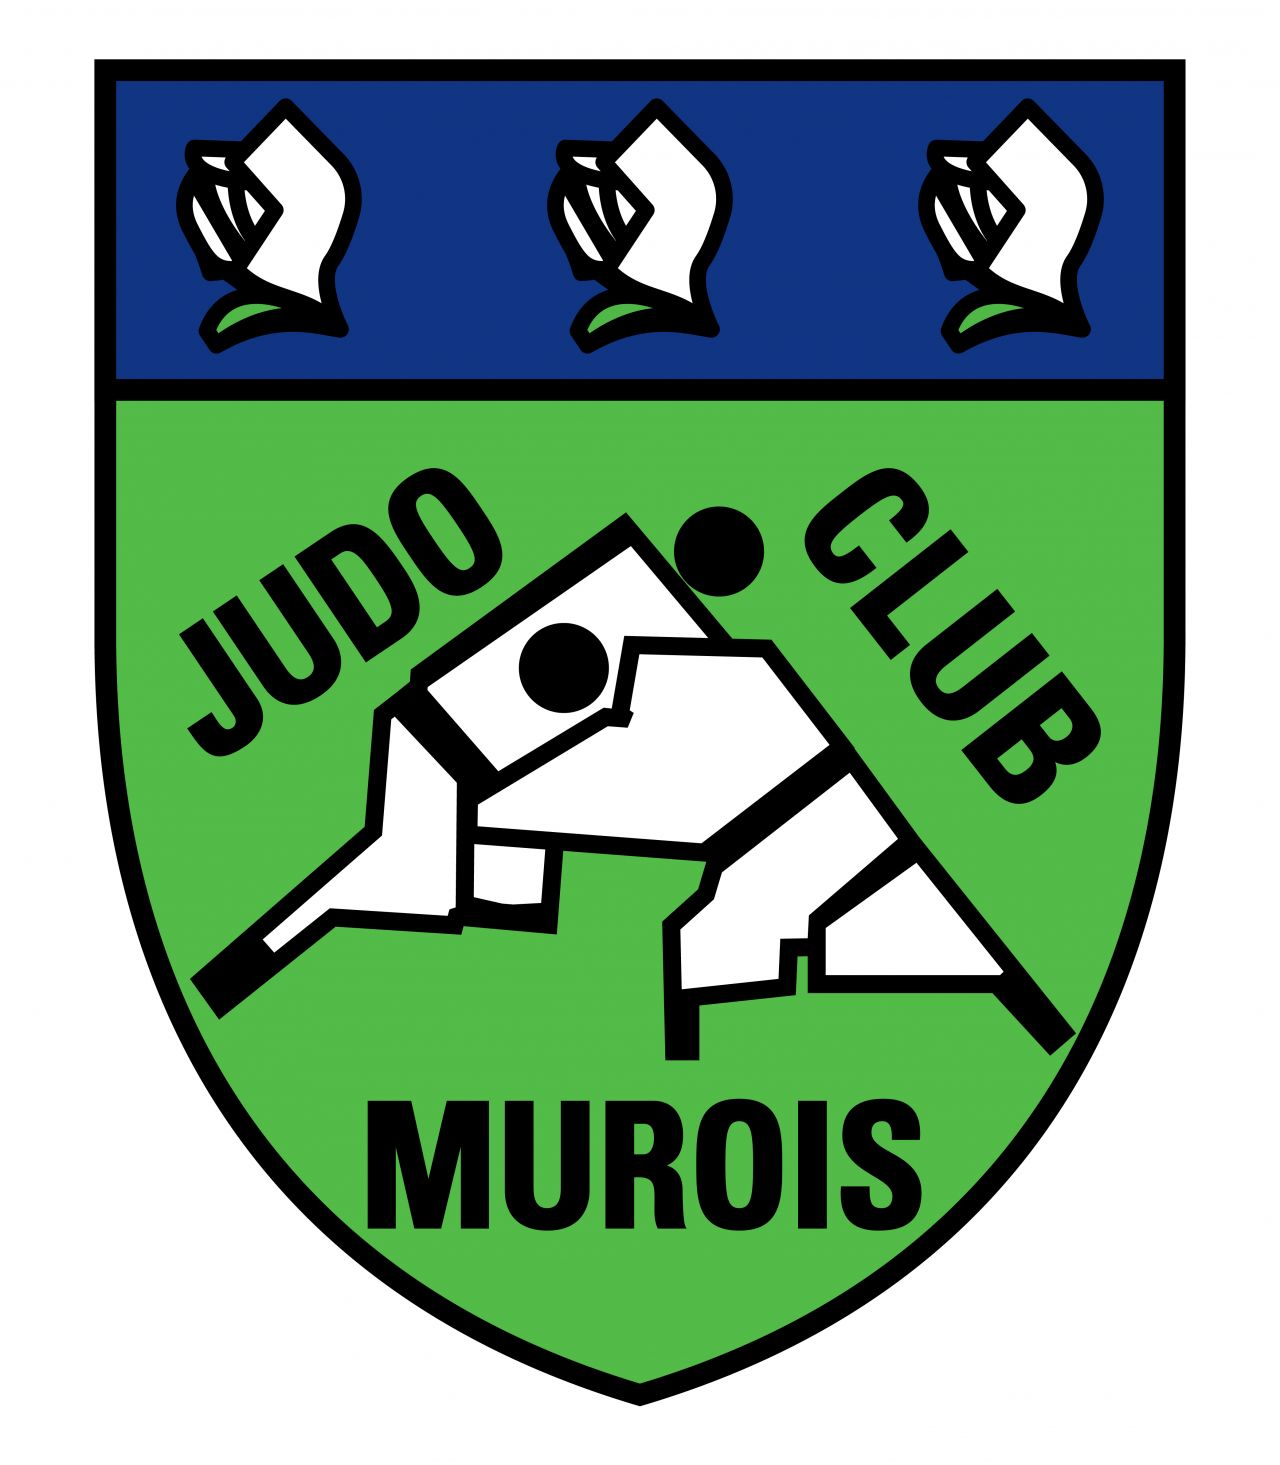 Logo J.C.MUROIS